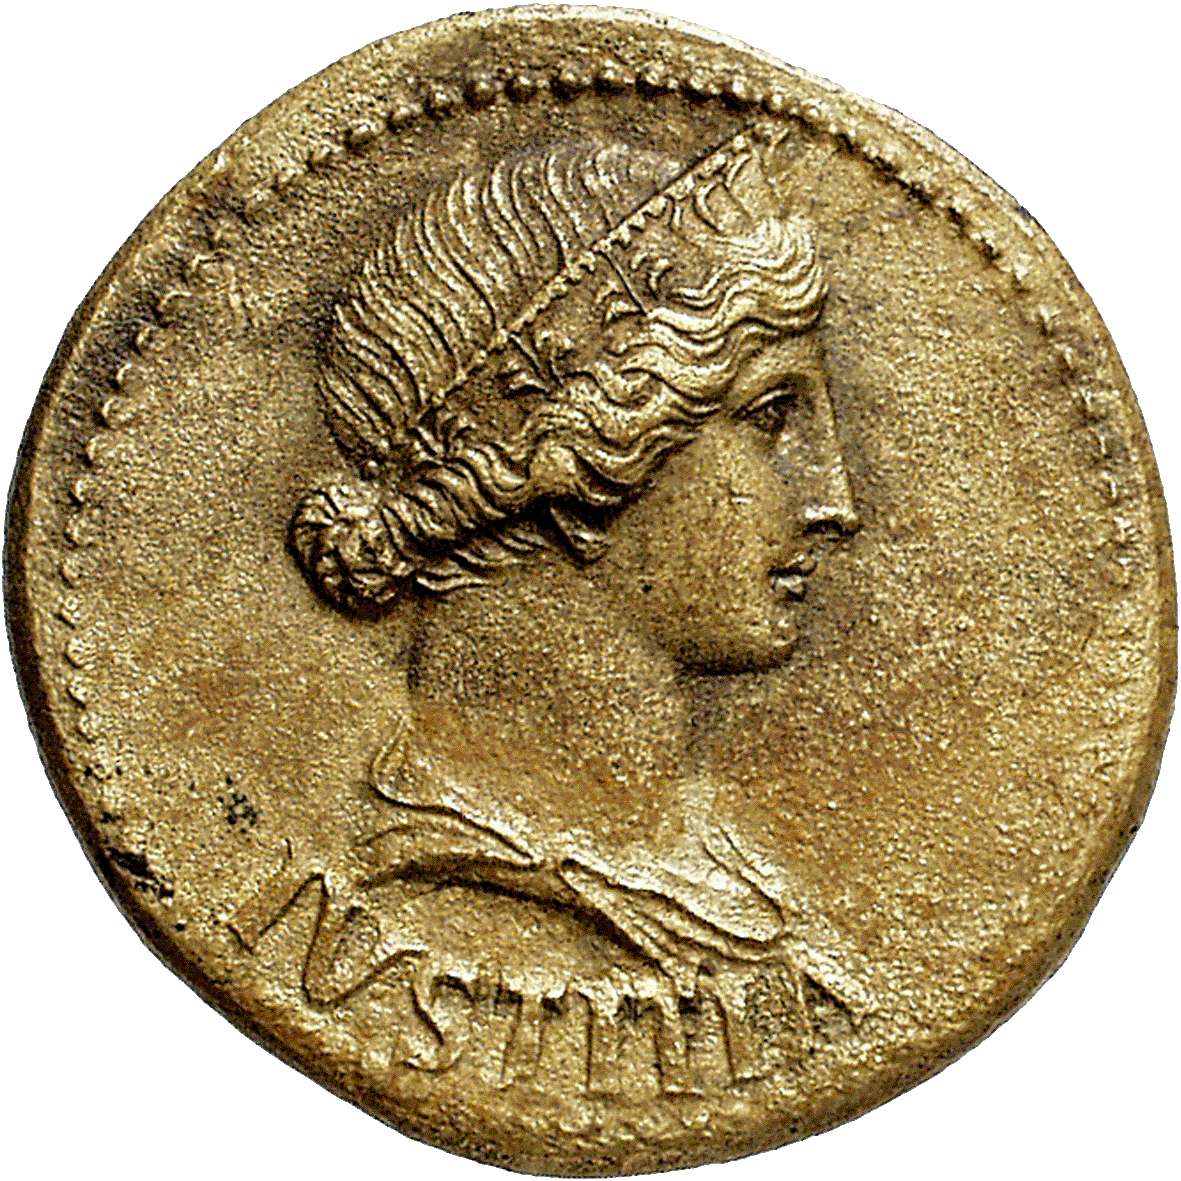 Römische Kaiserzeit, Tiberius für Livia Drusilla, Dupondius (obverse)